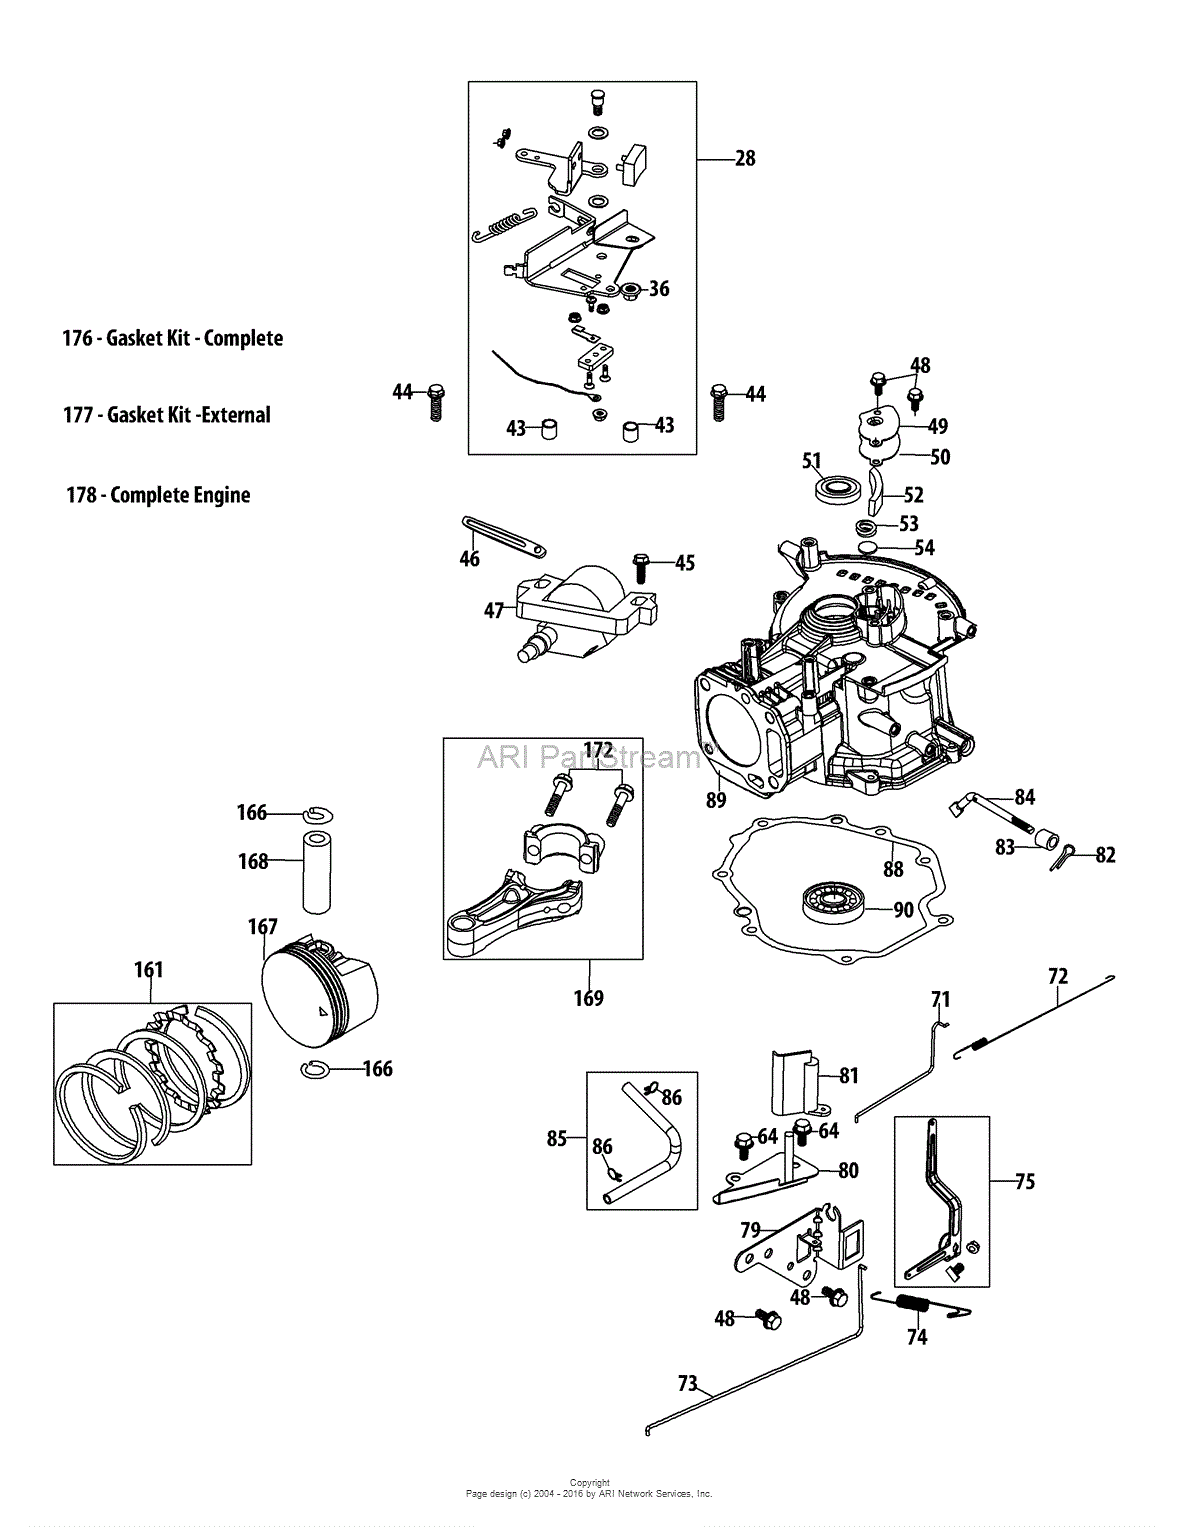 29 Craftsman Lawn Mower Carburetor Linkage Diagram - Wiring Database 2020